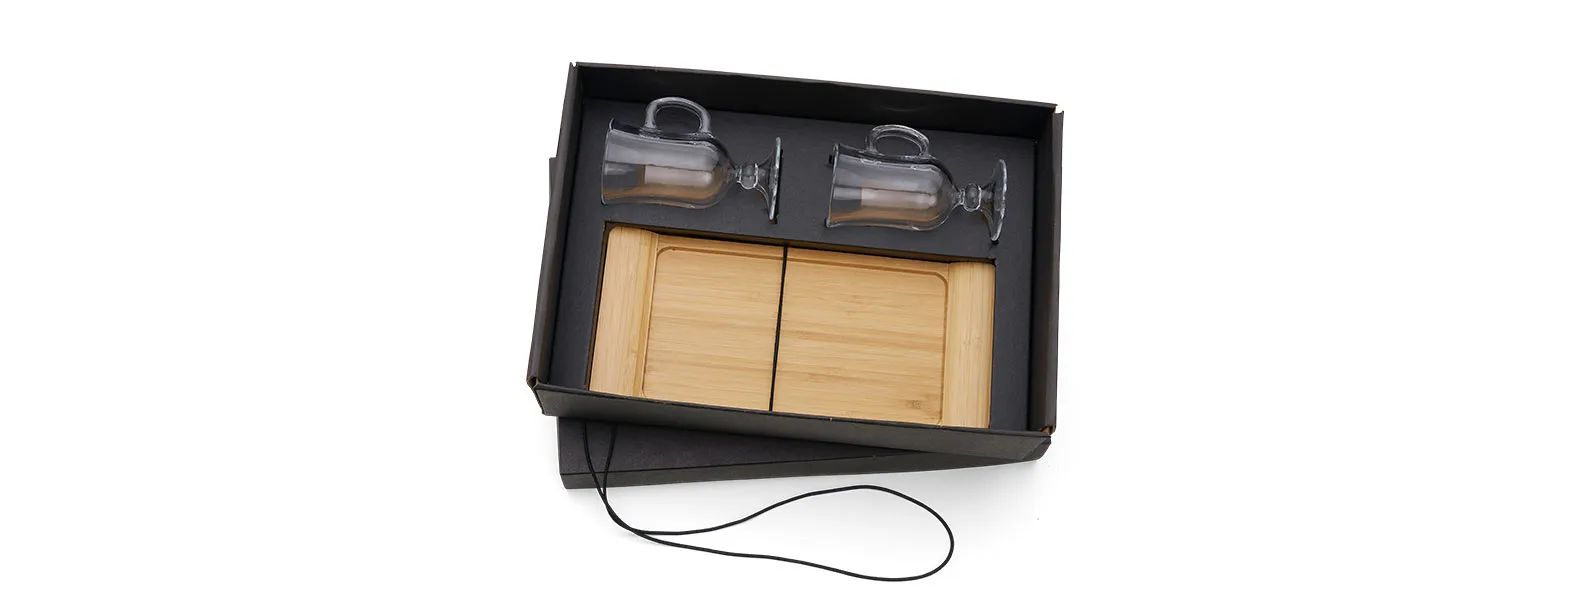 Kit para cafézinho; Conta com bandeja em bambu; Duas canecas em vidro 130ml cada. Estão perfeitamente acomodados em uma caixa para presentear.